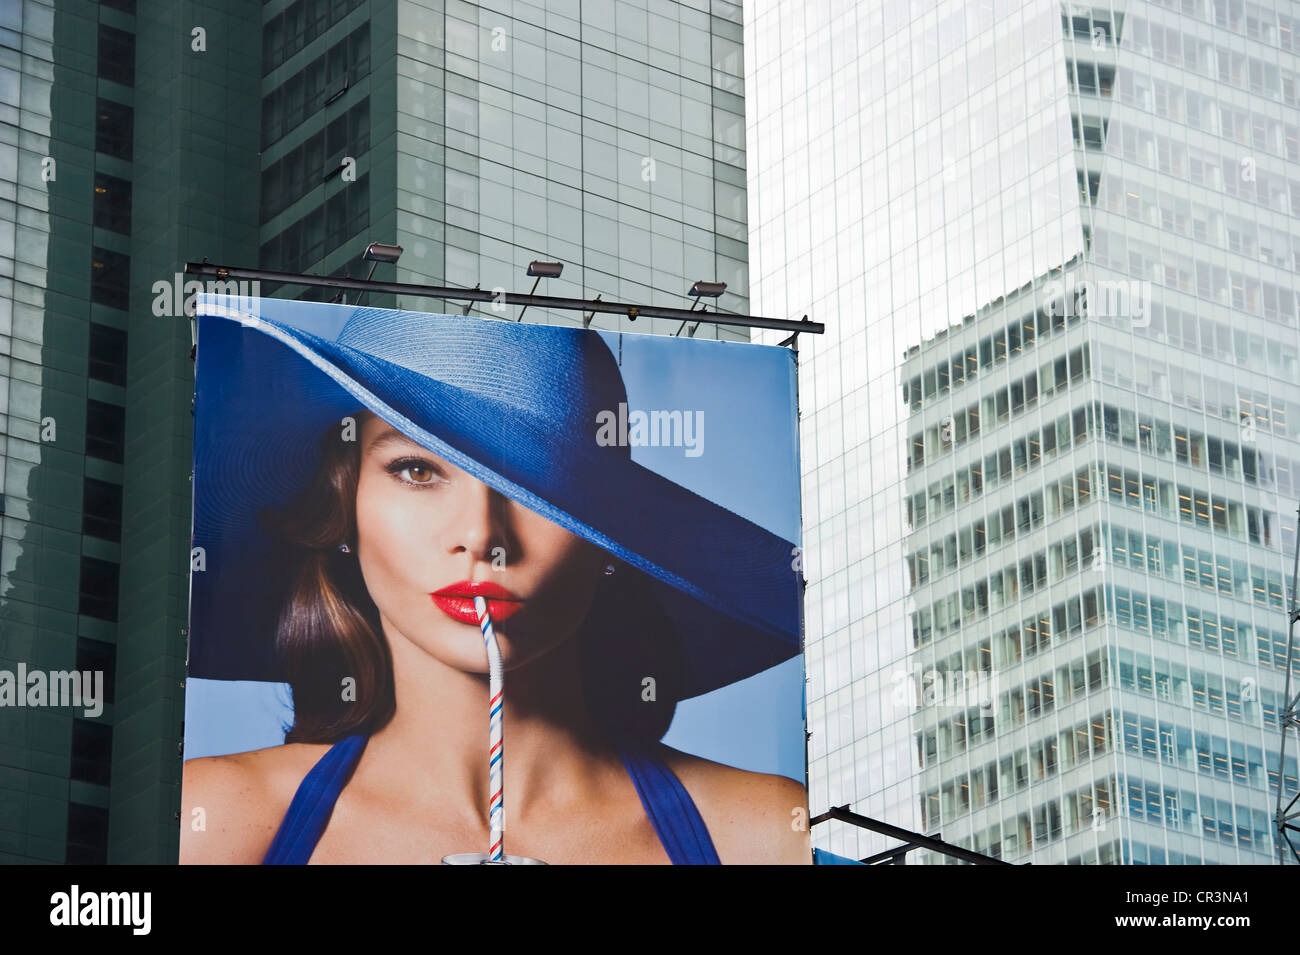 Panneau publicitaire Publicité dans Times Square, Manhattan, New York, USA Banque D'Images